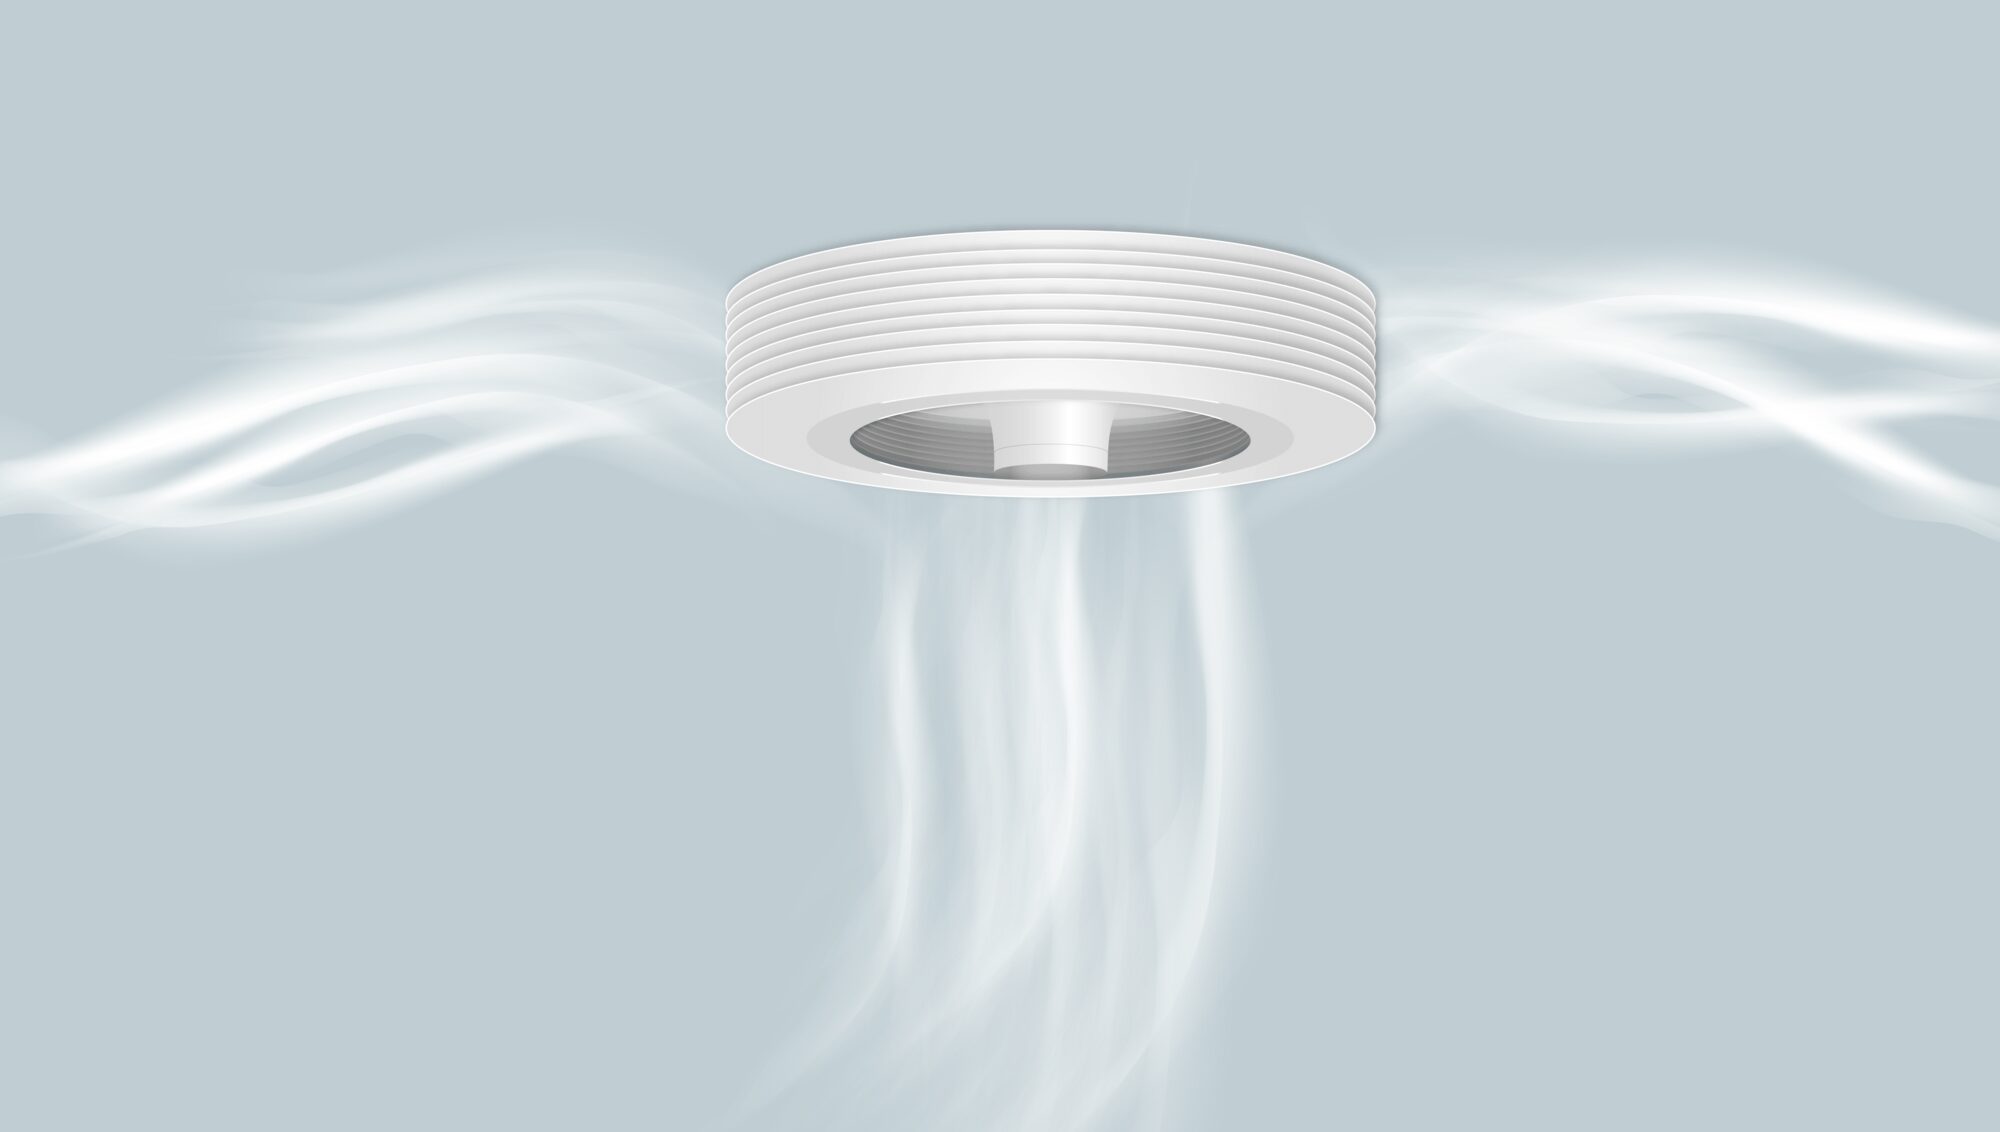 Exhale EXHALE SCHEMA 03 Start-up – Exhale : Le ventilateur sans pale inspiré de l’aéronautique aéronautique